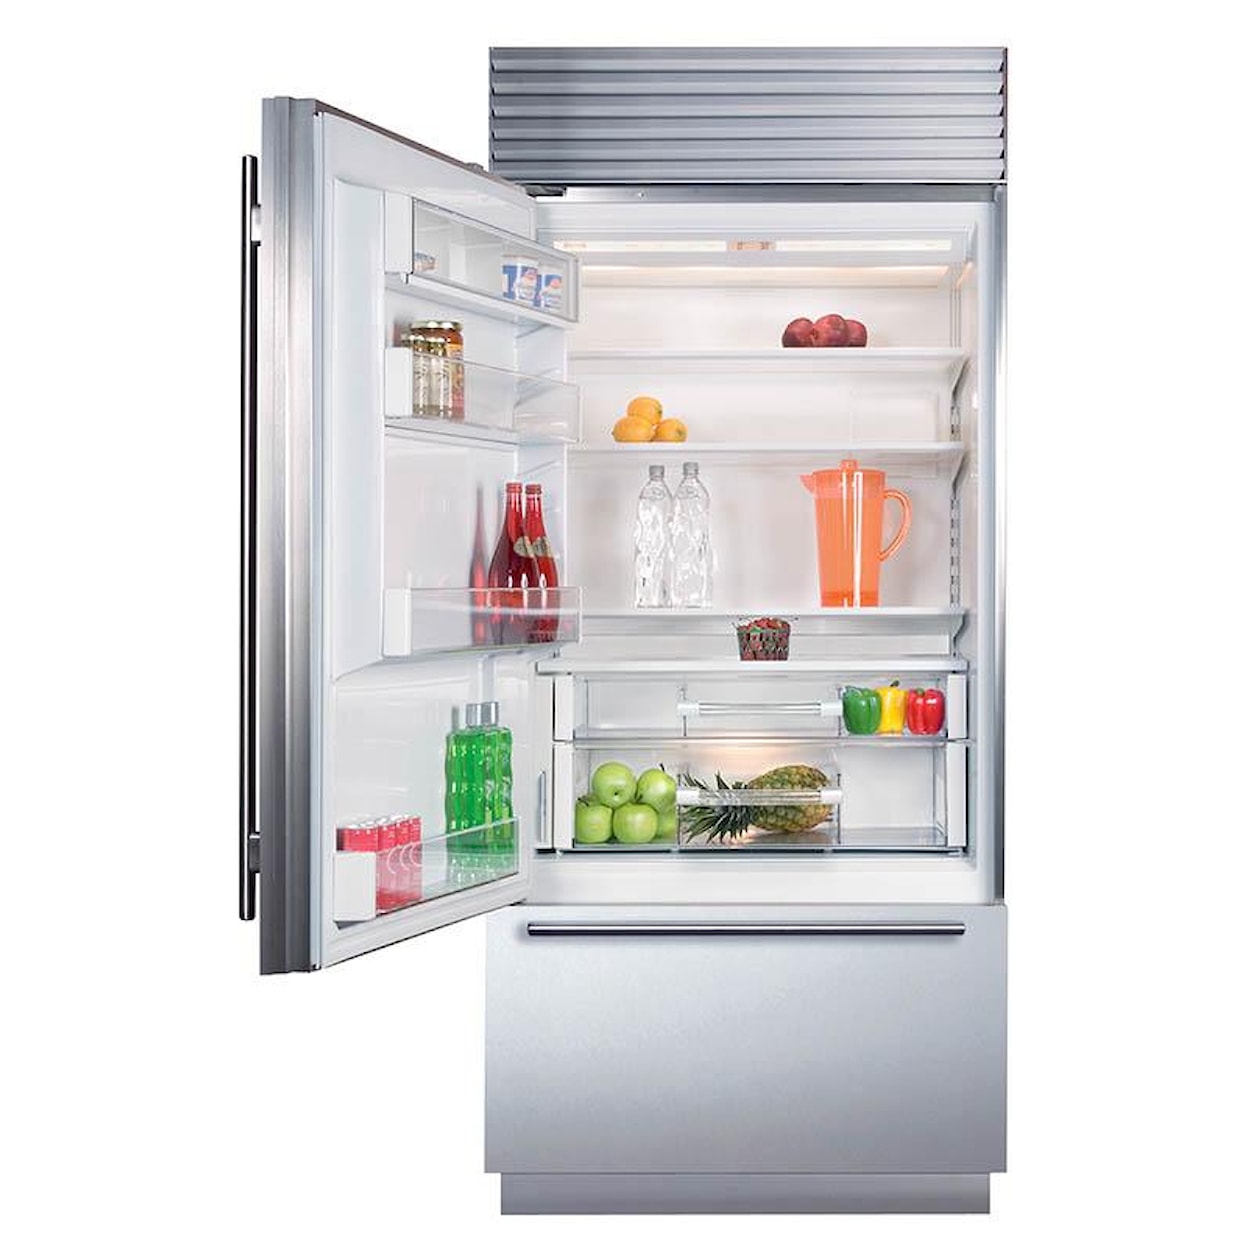 Sub-Zero Built-In Refrigerators 21.4 Cu. Ft. Built-In Refrigerator